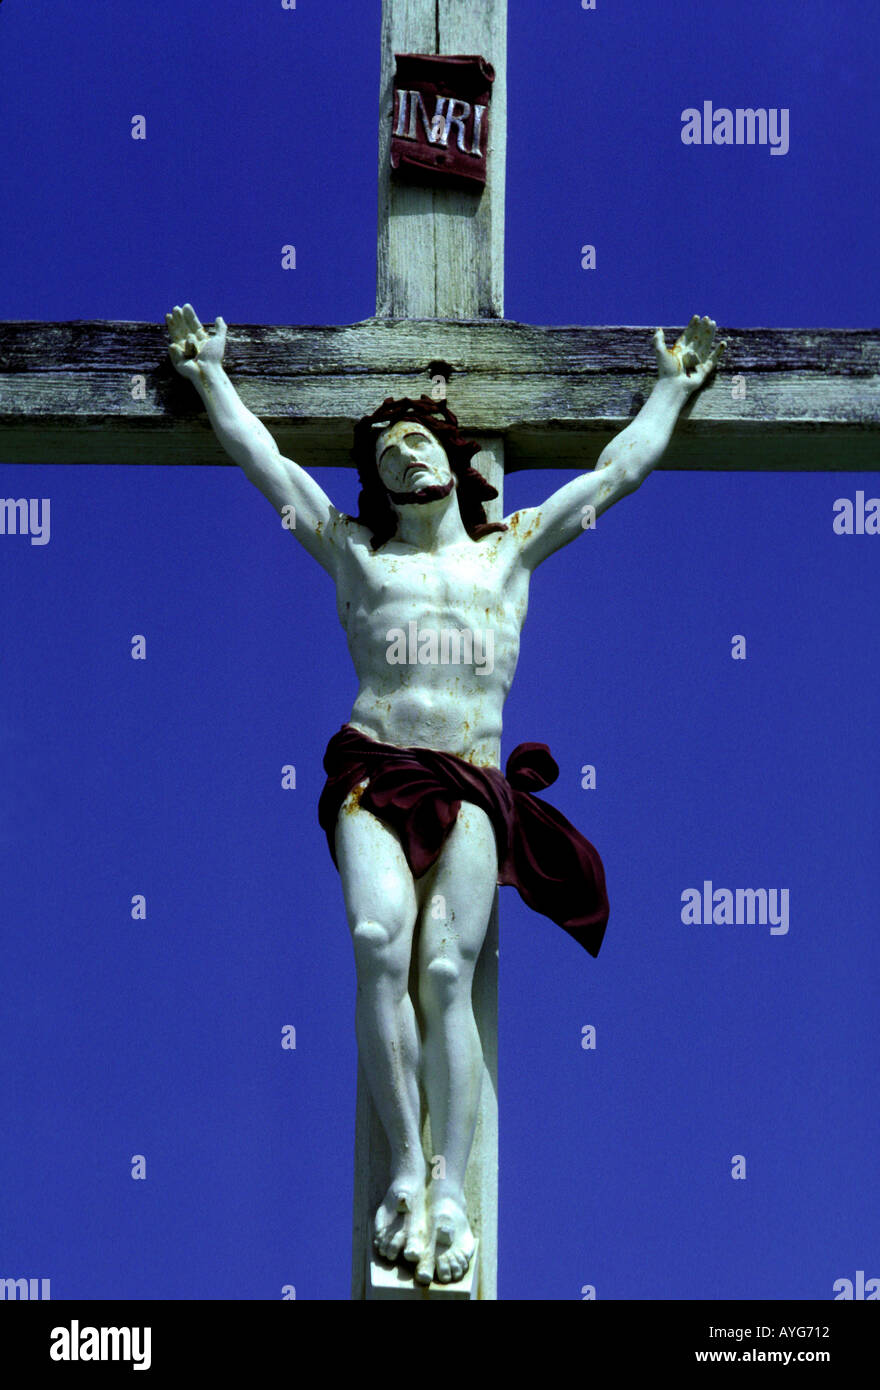 Jésus Christ sur la croix crucifix crucifixion de l'église de la ville de Le MARIN Le Marin Martinique Antilles Françaises Banque D'Images